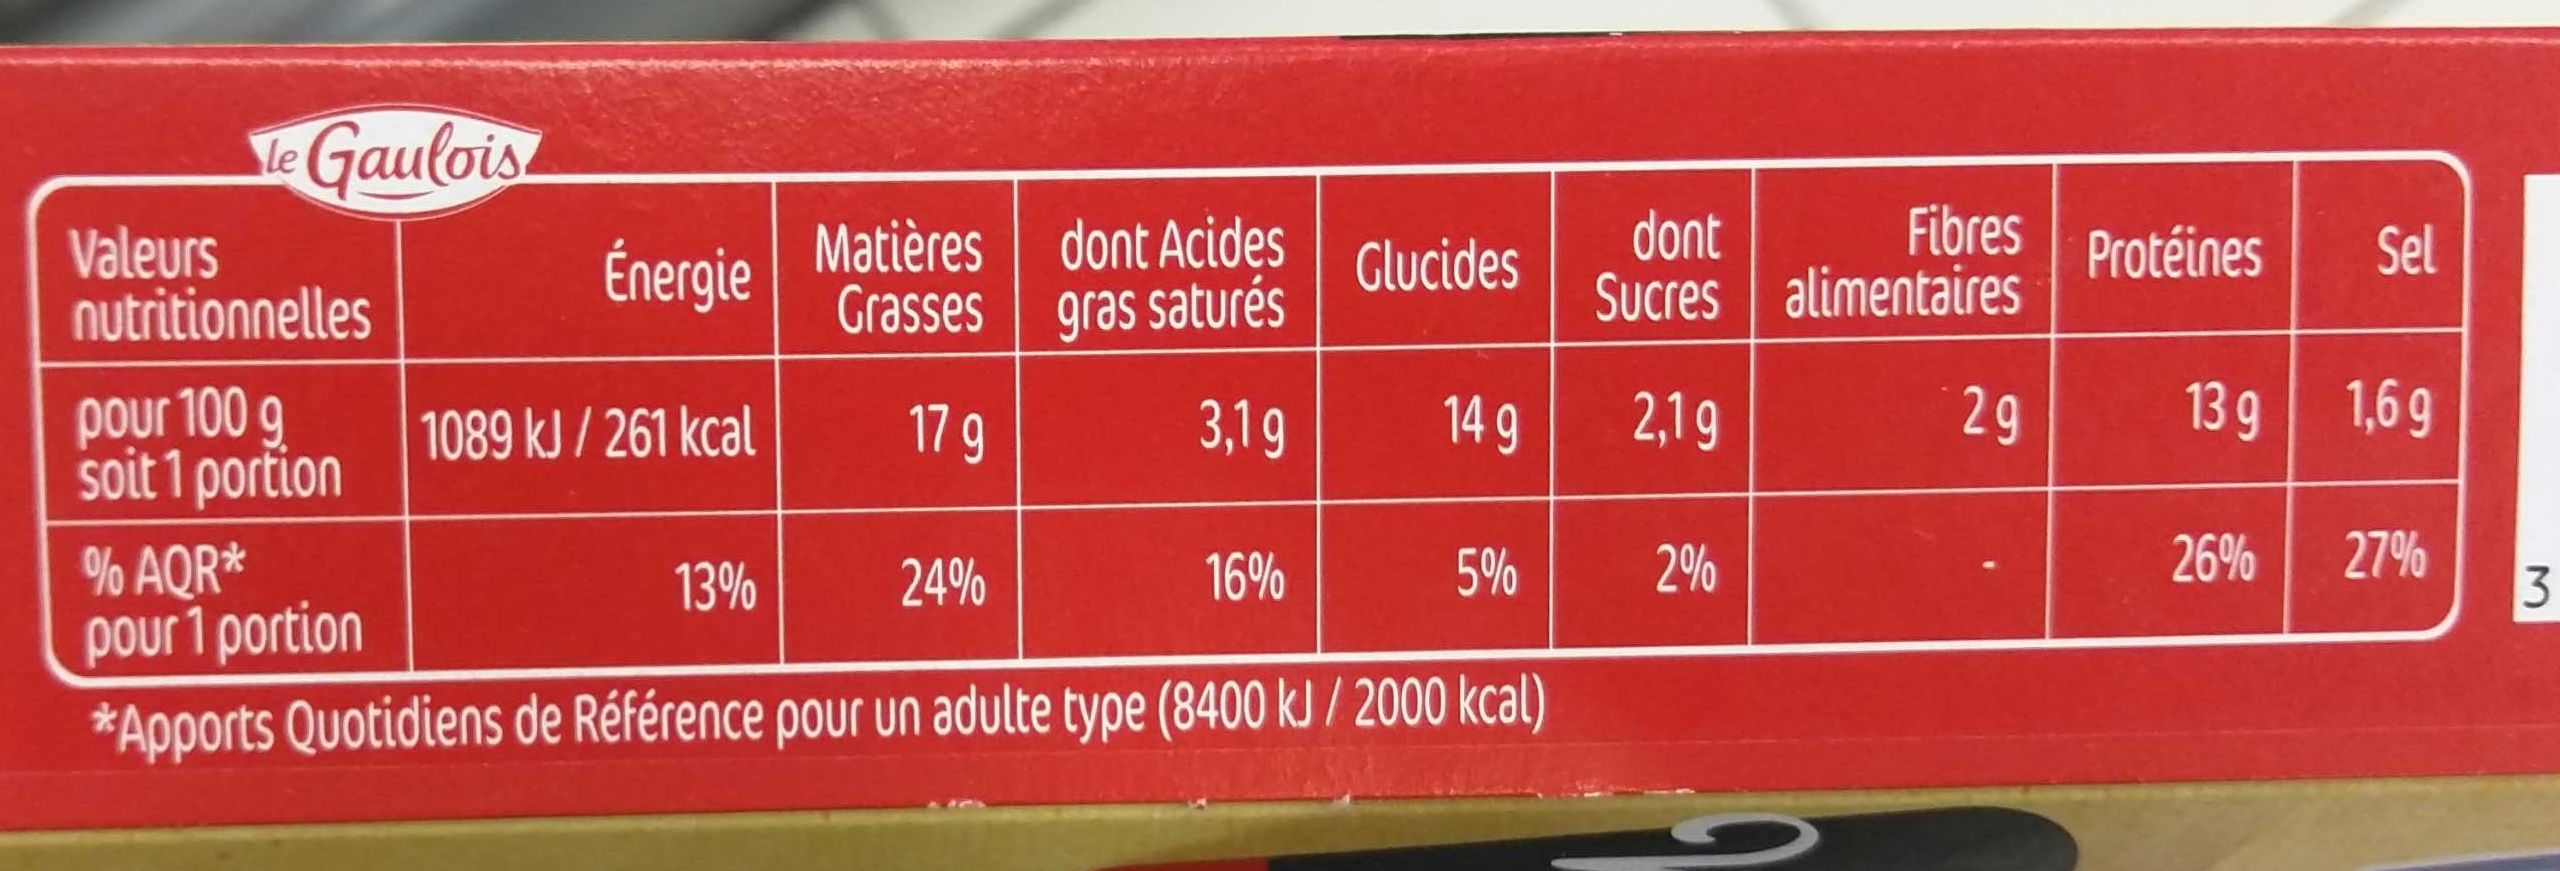 panés façon milanaise parmesan x2 - Nutrition facts - fr